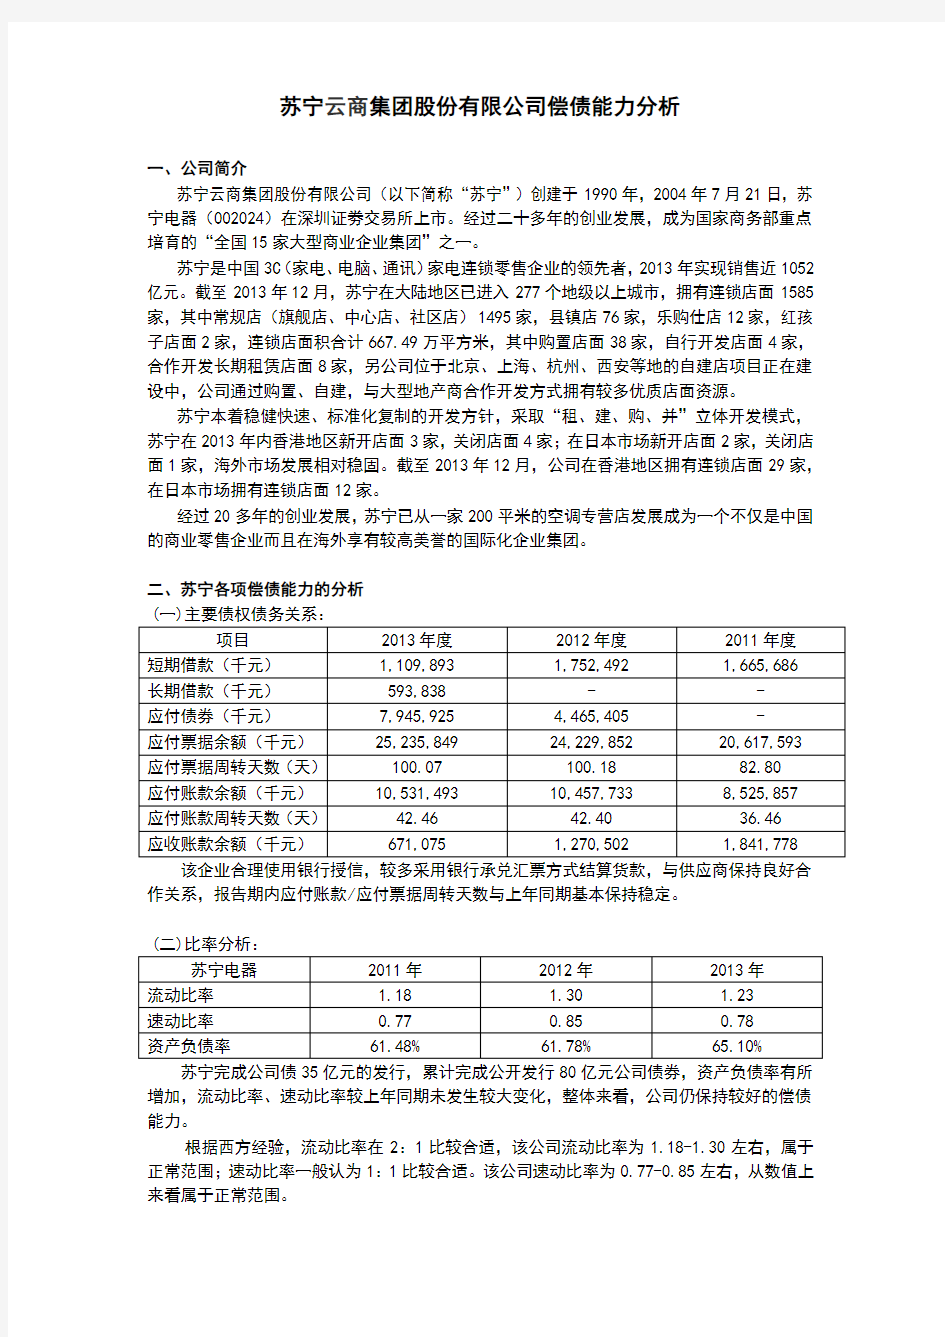 苏宁云商集团股份有限公司偿债能力分析